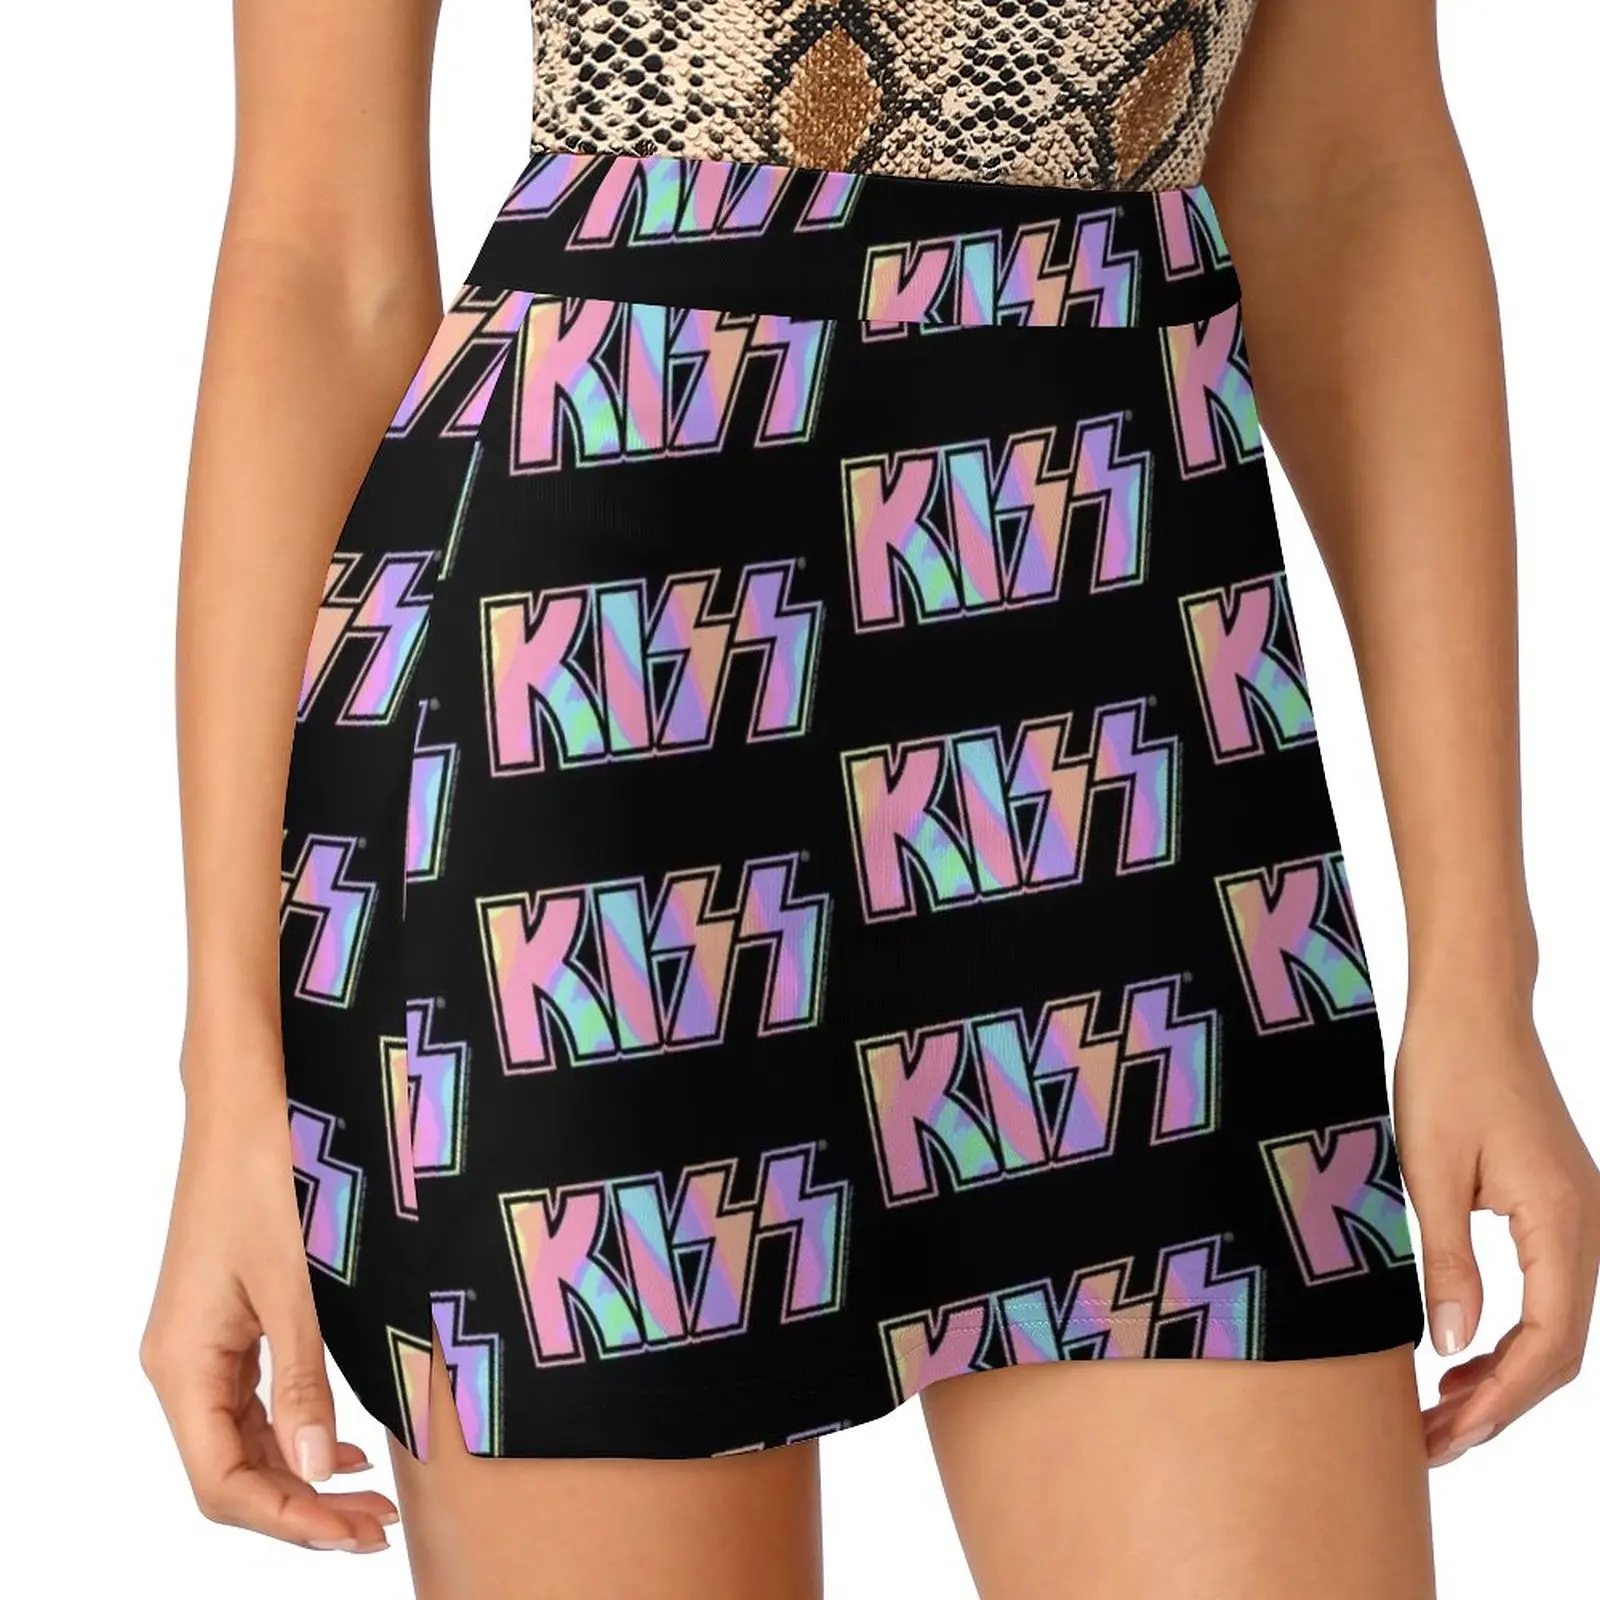 Pastel Tie-Dye Kiss The Band Logo Dark Light Proof Trouser Skirt Skirt satin Dresses kiss kiss band rock